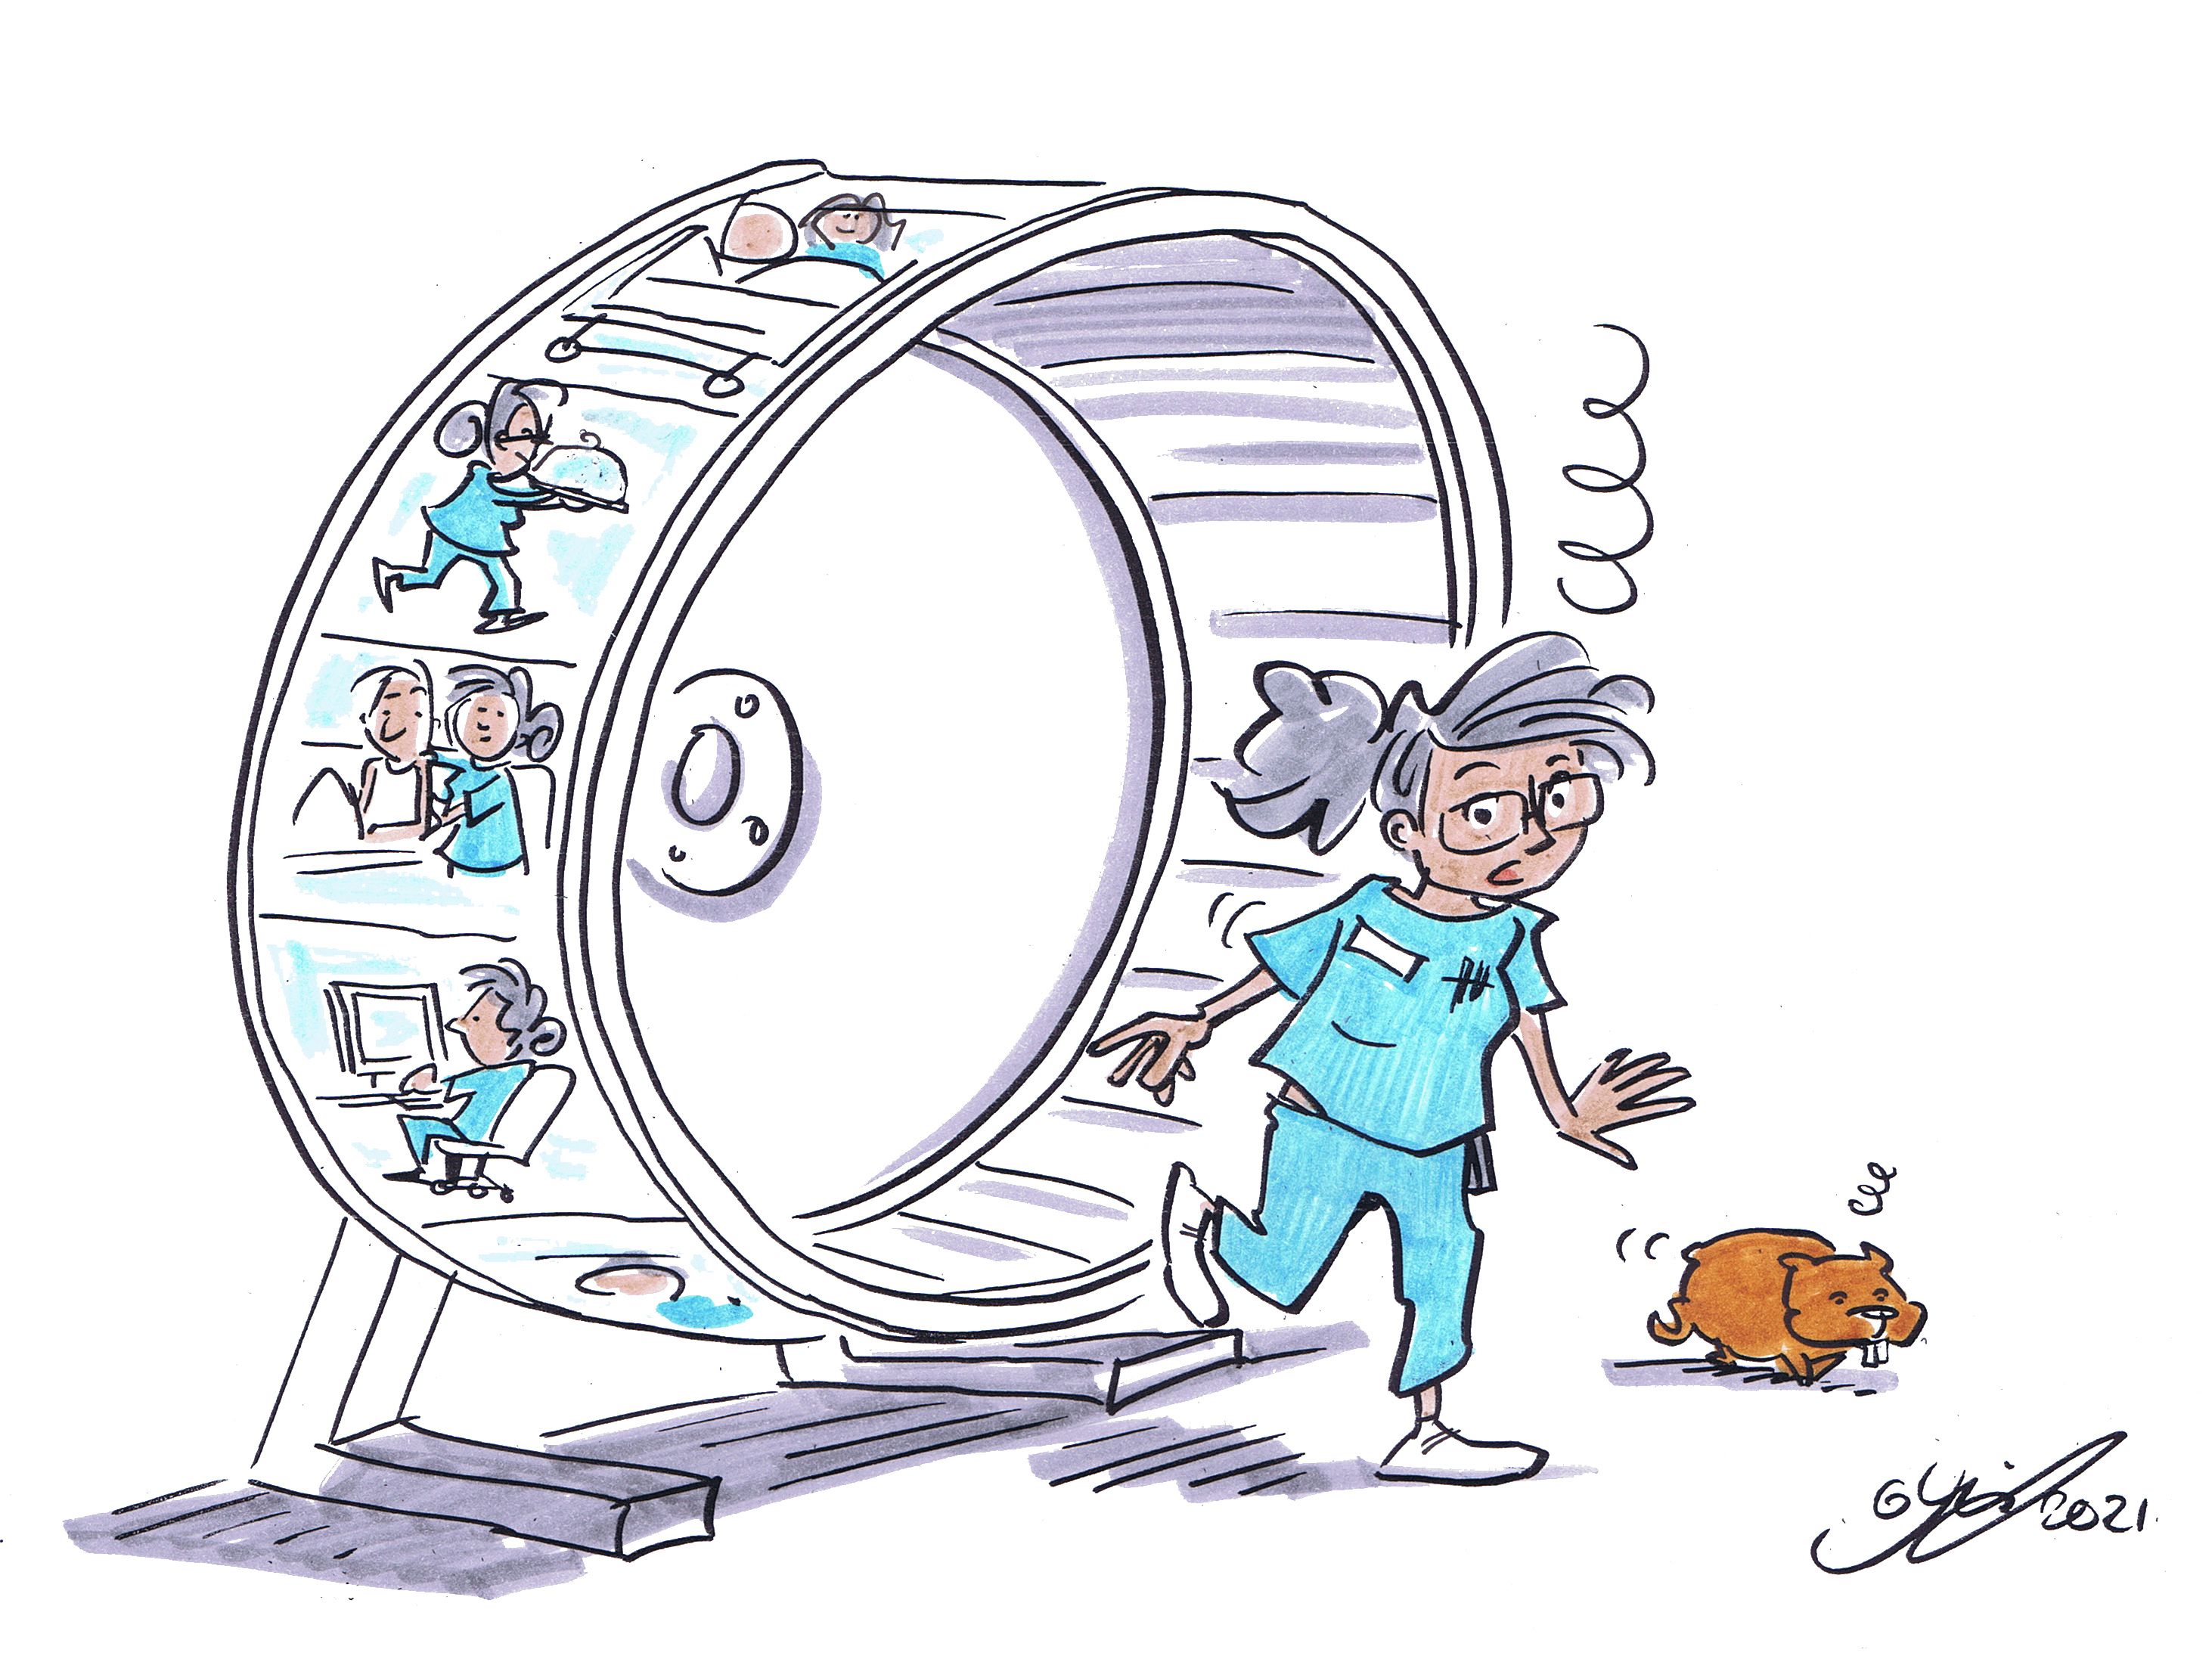 Karikatur: Eine grauhaarige Pflegekraft verlässt benommen ein Hamsterrad. Zeichnungen auf dem Hamsterrad zeigen Situationen aus dem Arbeitsalltag: Eine Pflegekraft am Computer, ein Tablett tragend oder im Patientenkontakt.